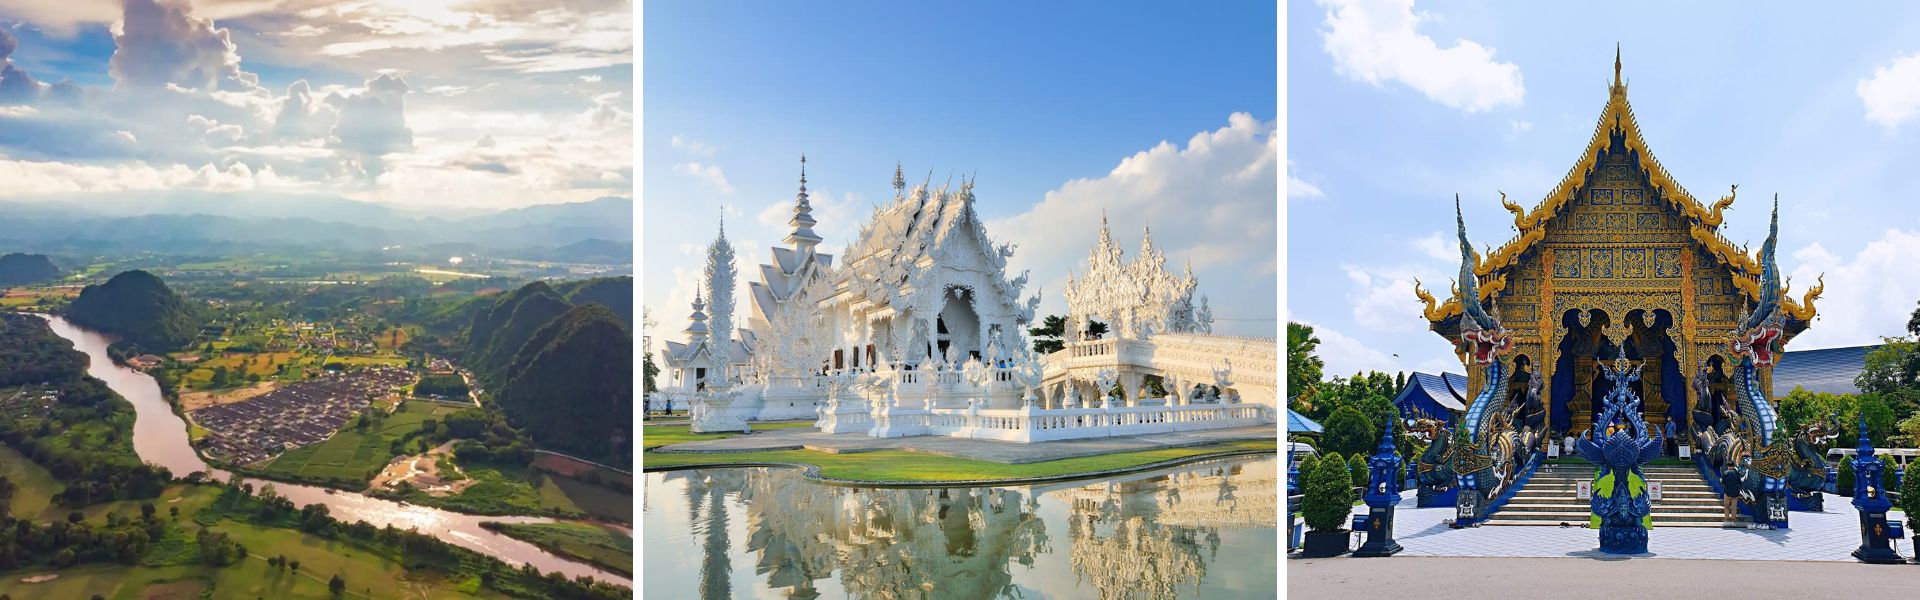 Chiang Rai, Sehenswürdigkeiten und Aktivitäten | Thailand Reisen